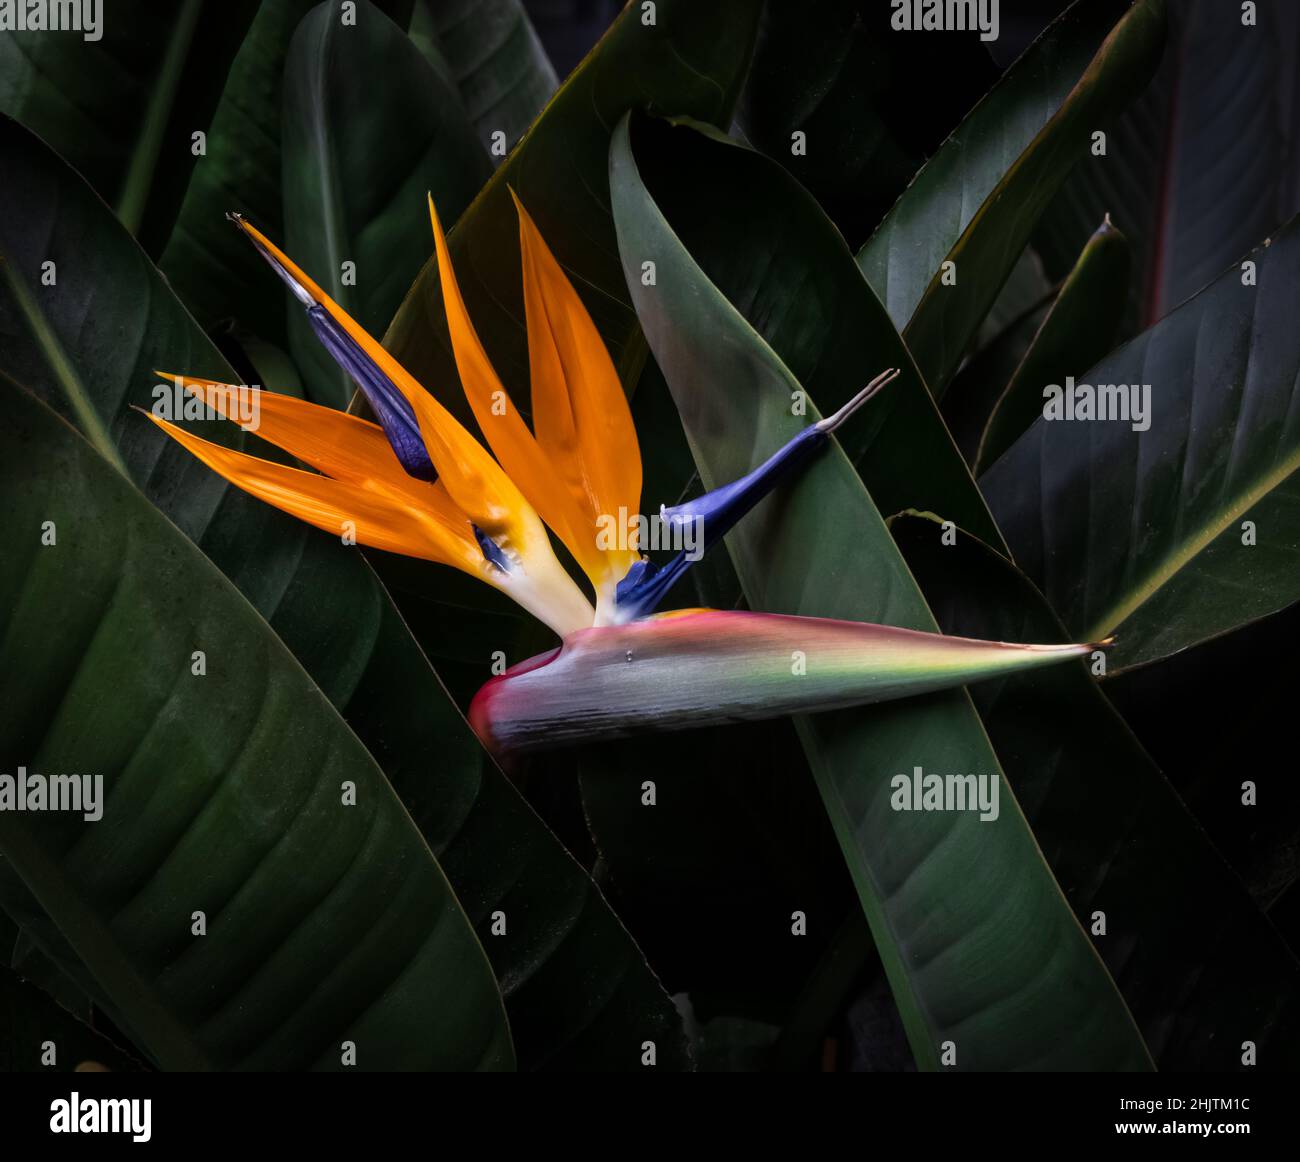 oiseau de paradis fleur de gros plan caché dans des feuilles vert foncé Banque D'Images